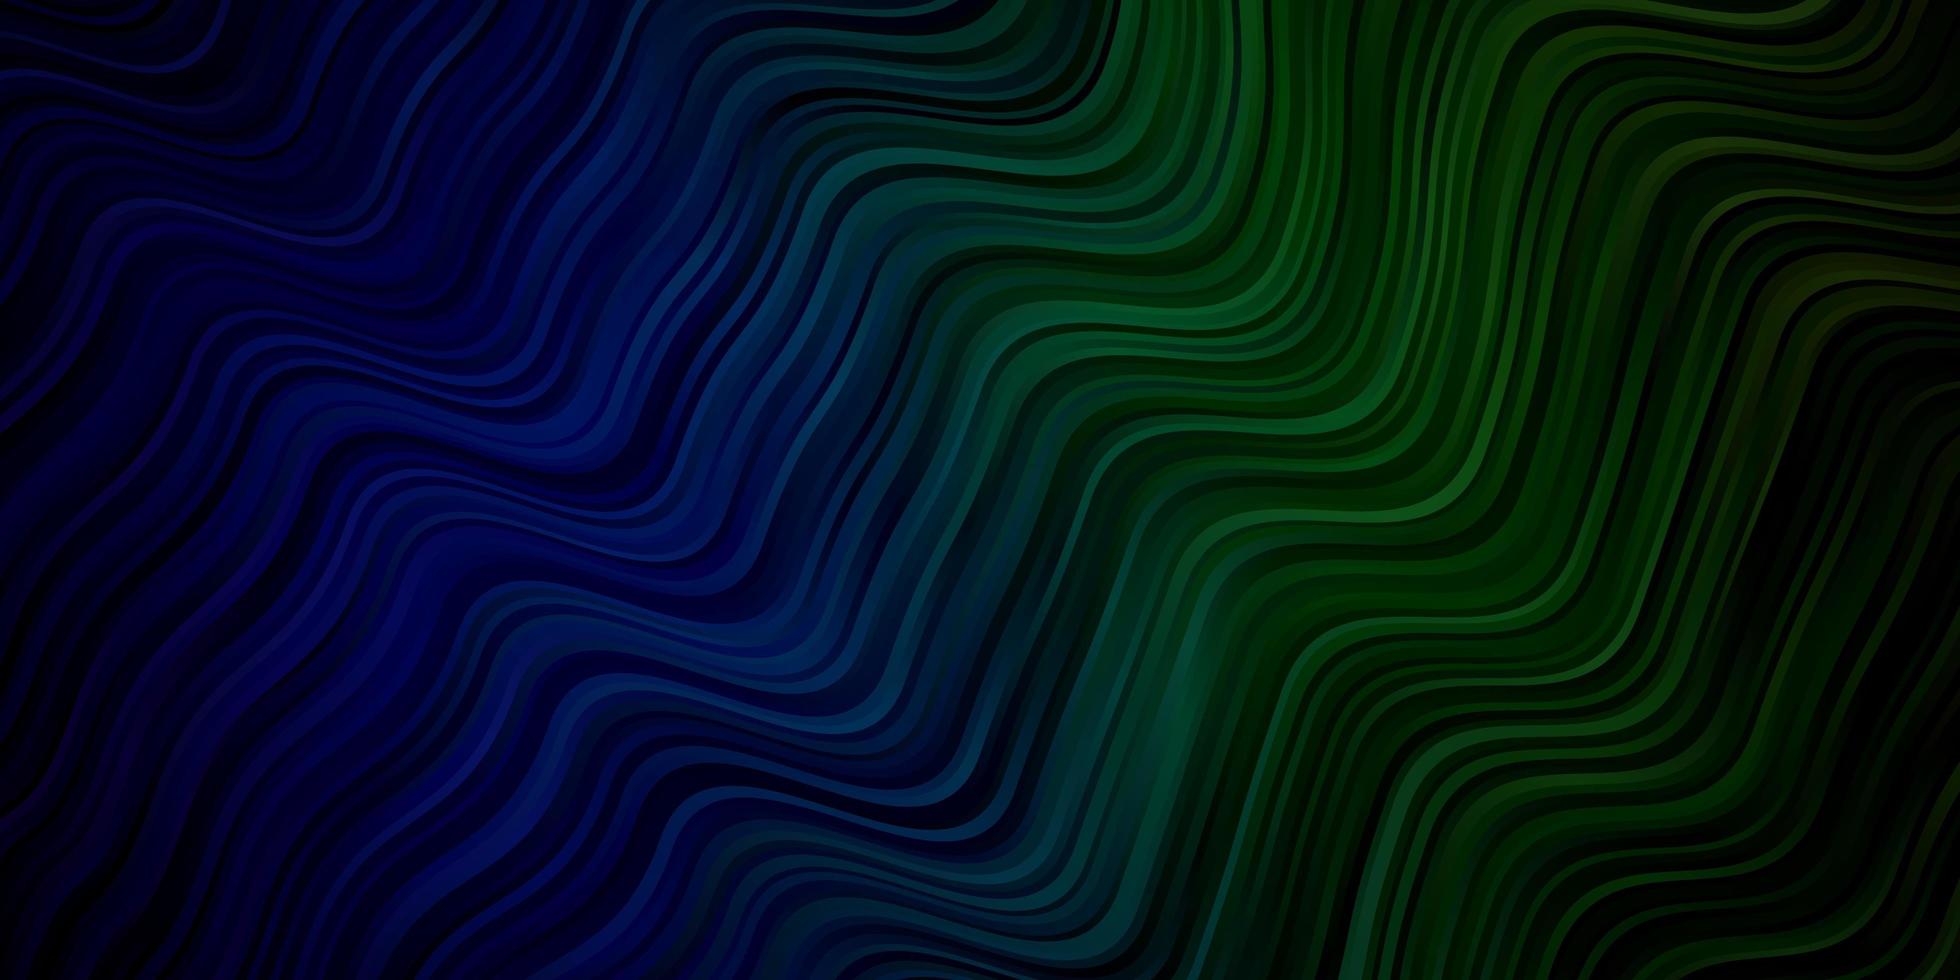 ljusblått, grönt vektormönster med sneda linjer. vektor